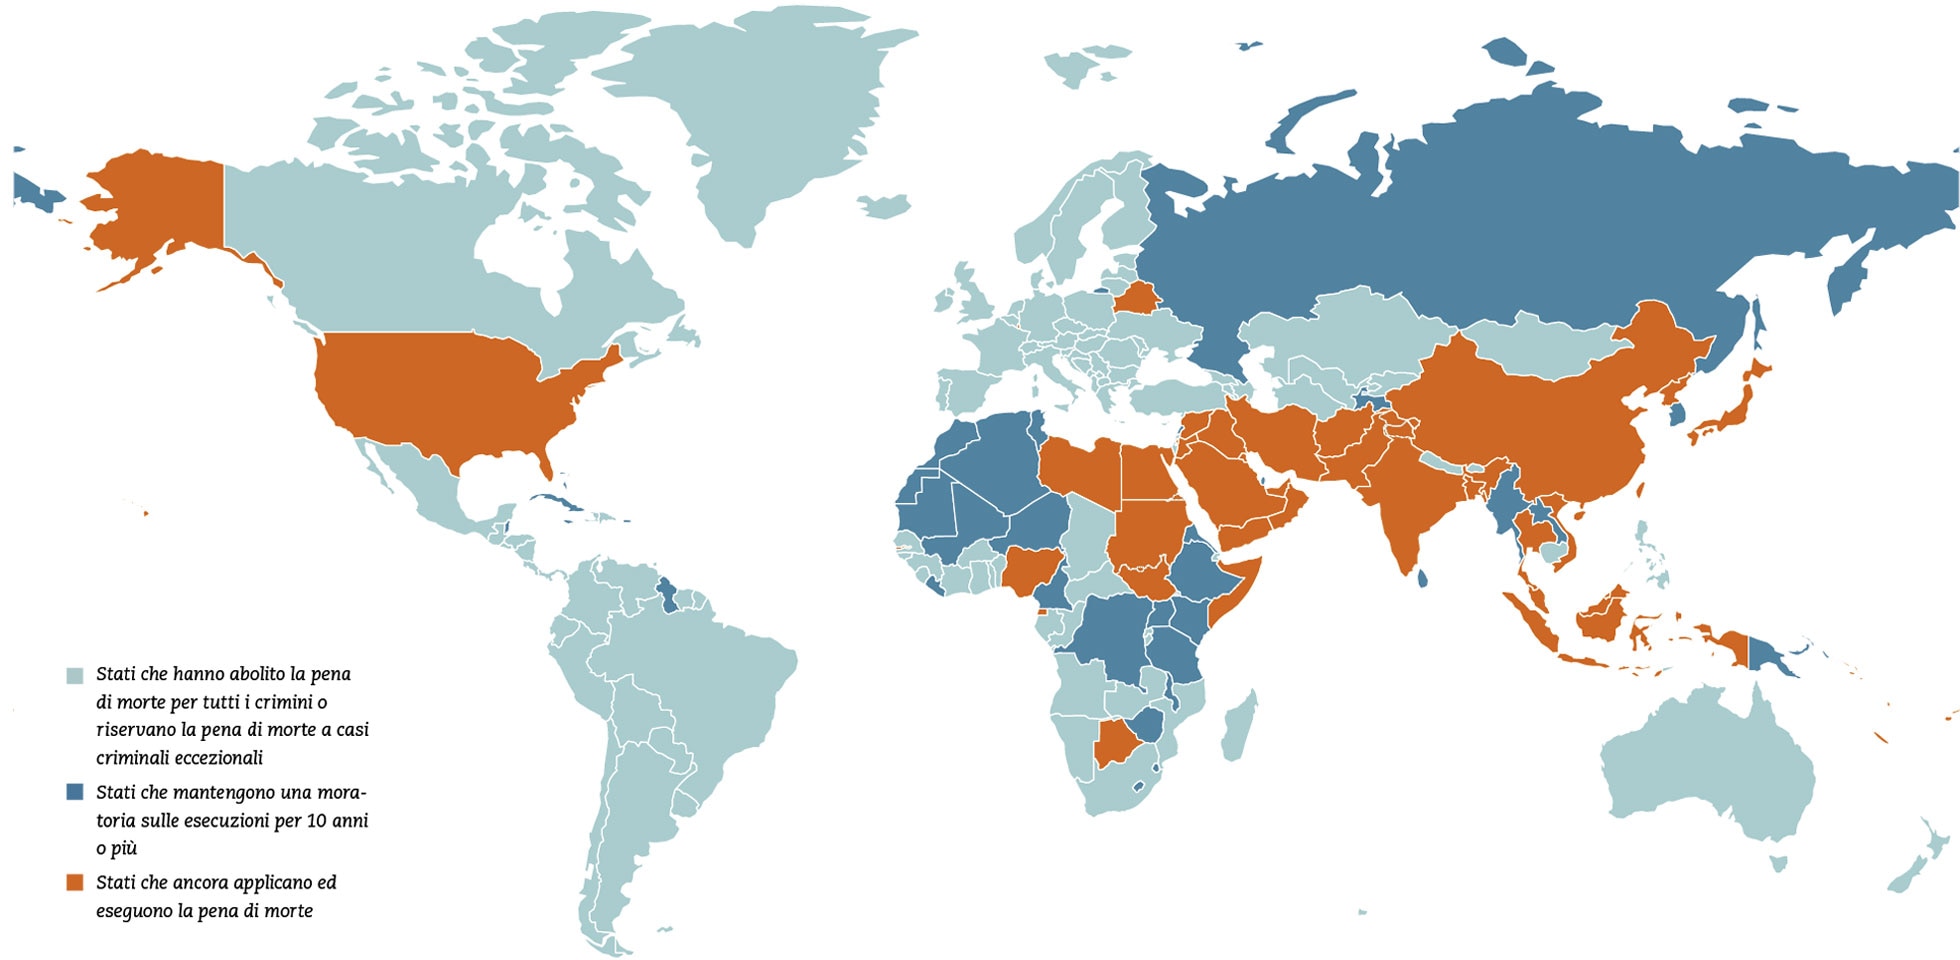 Mappa mondiale che dimostra la situazione dell’abolizione della pena di morte nell’ottobre 2023.